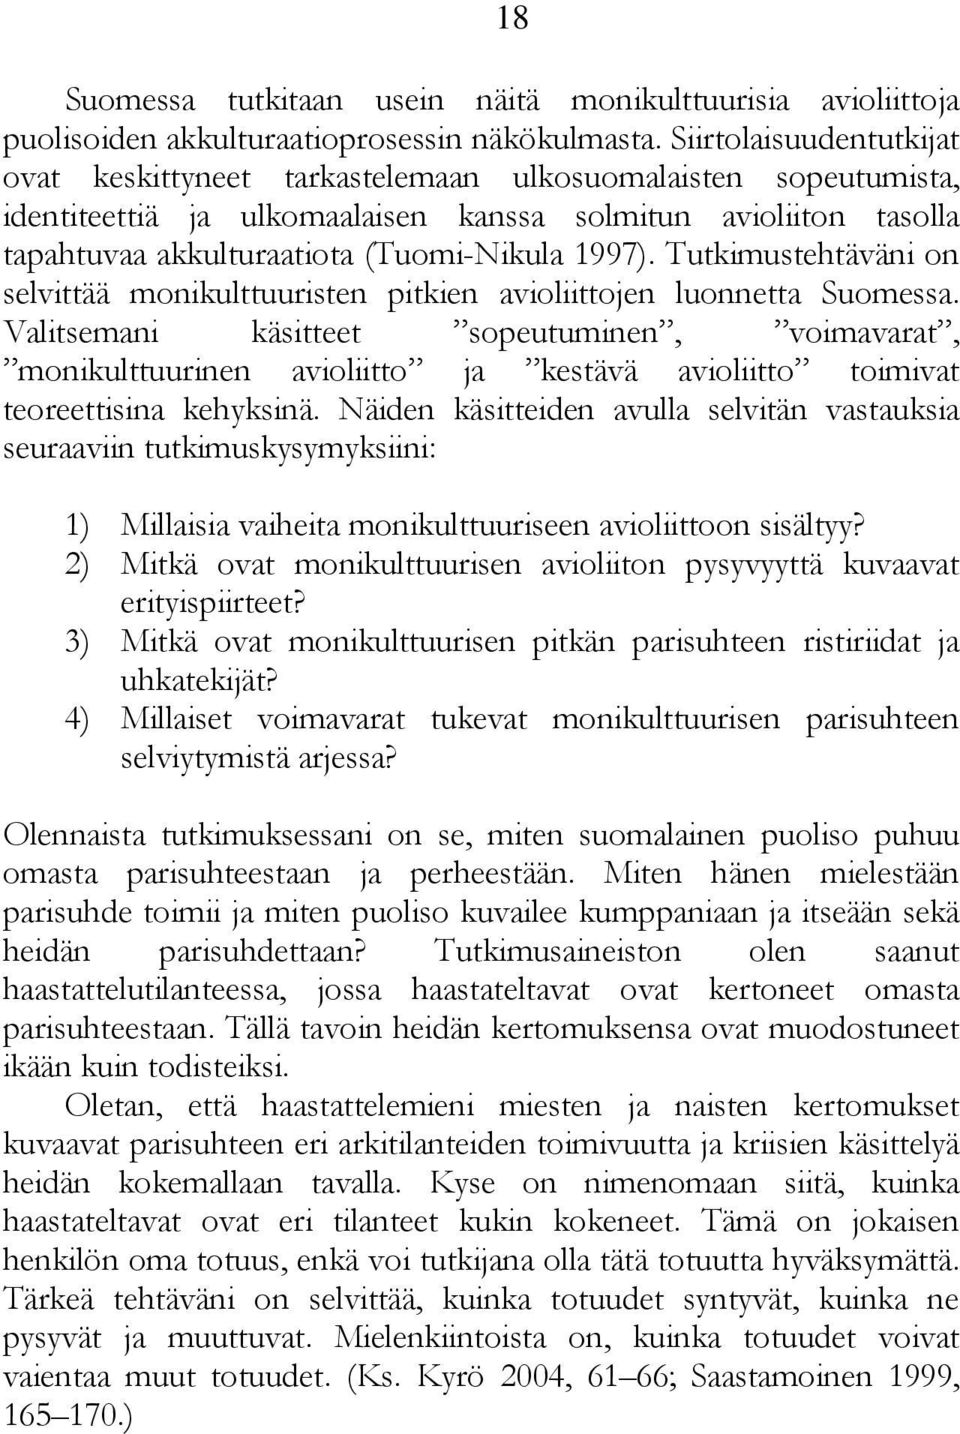 1997). Tutkimustehtäväni on selvittää monikulttuuristen pitkien avioliittojen luonnetta Suomessa.